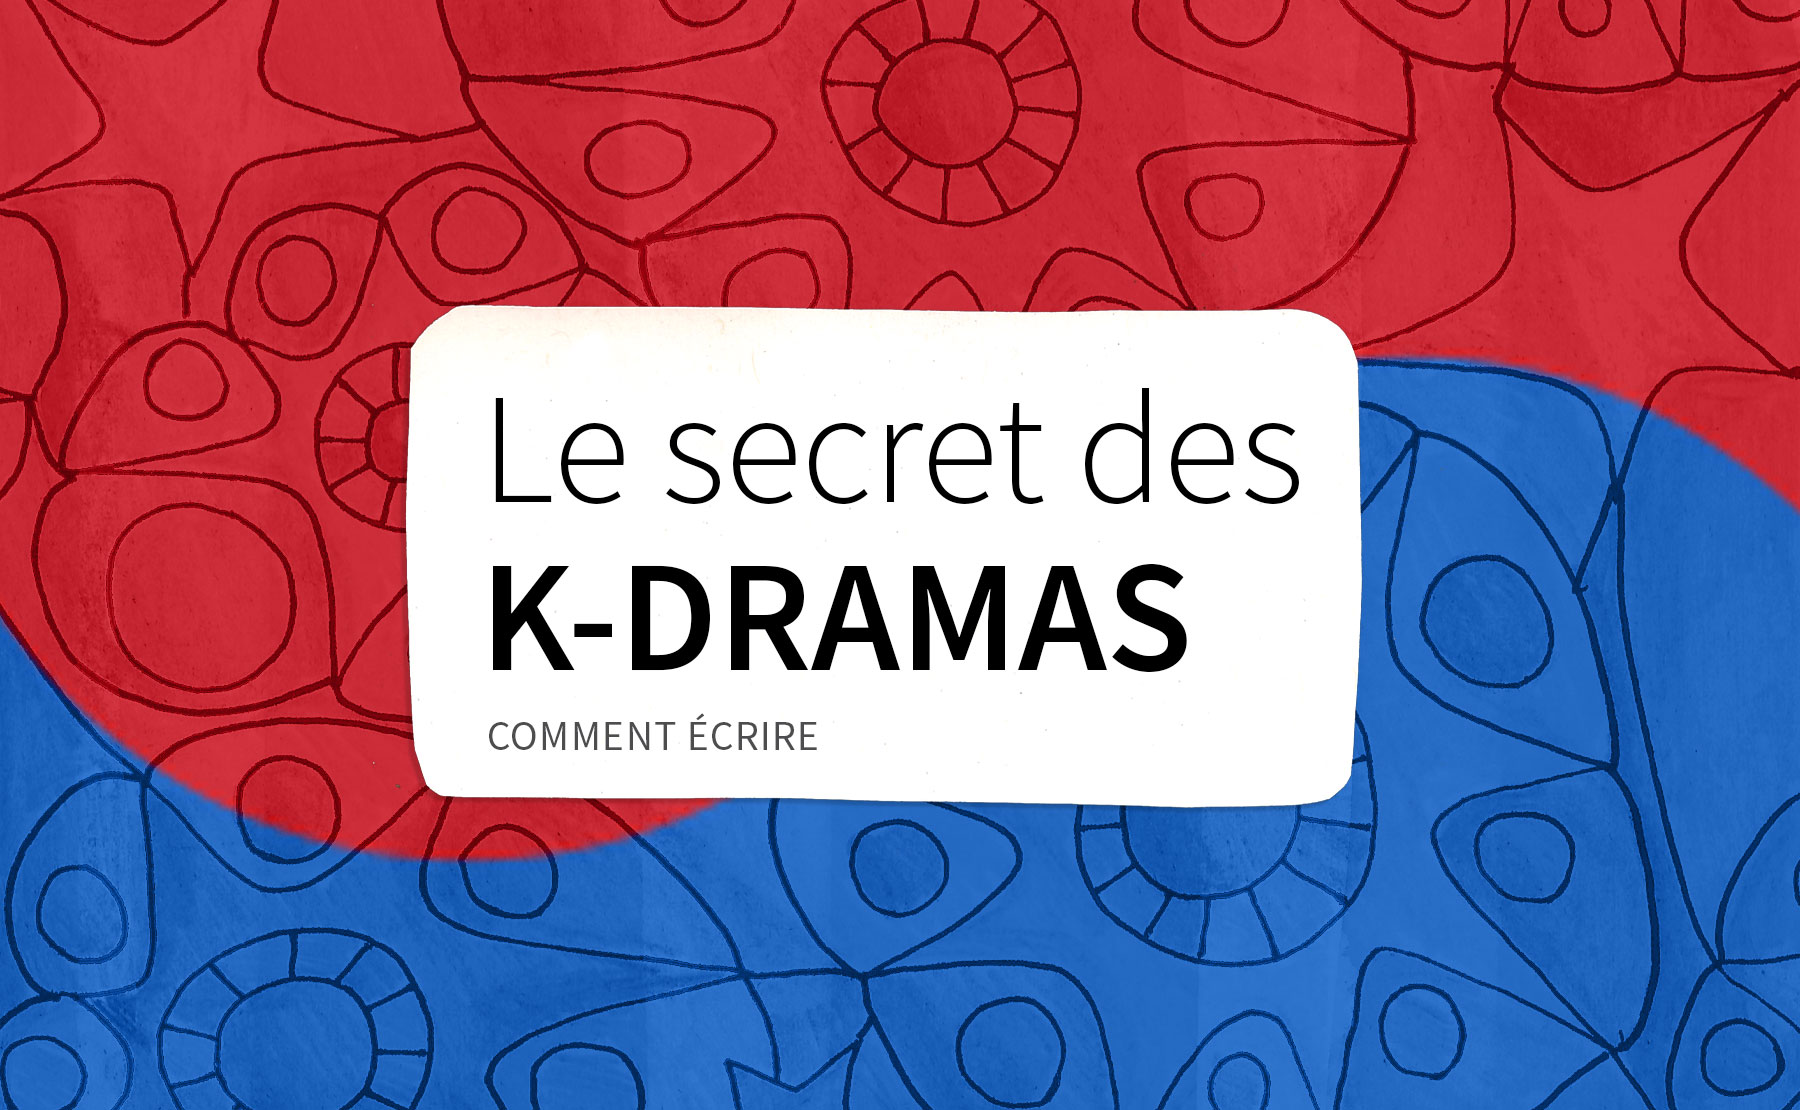 Le secret des K-dramas